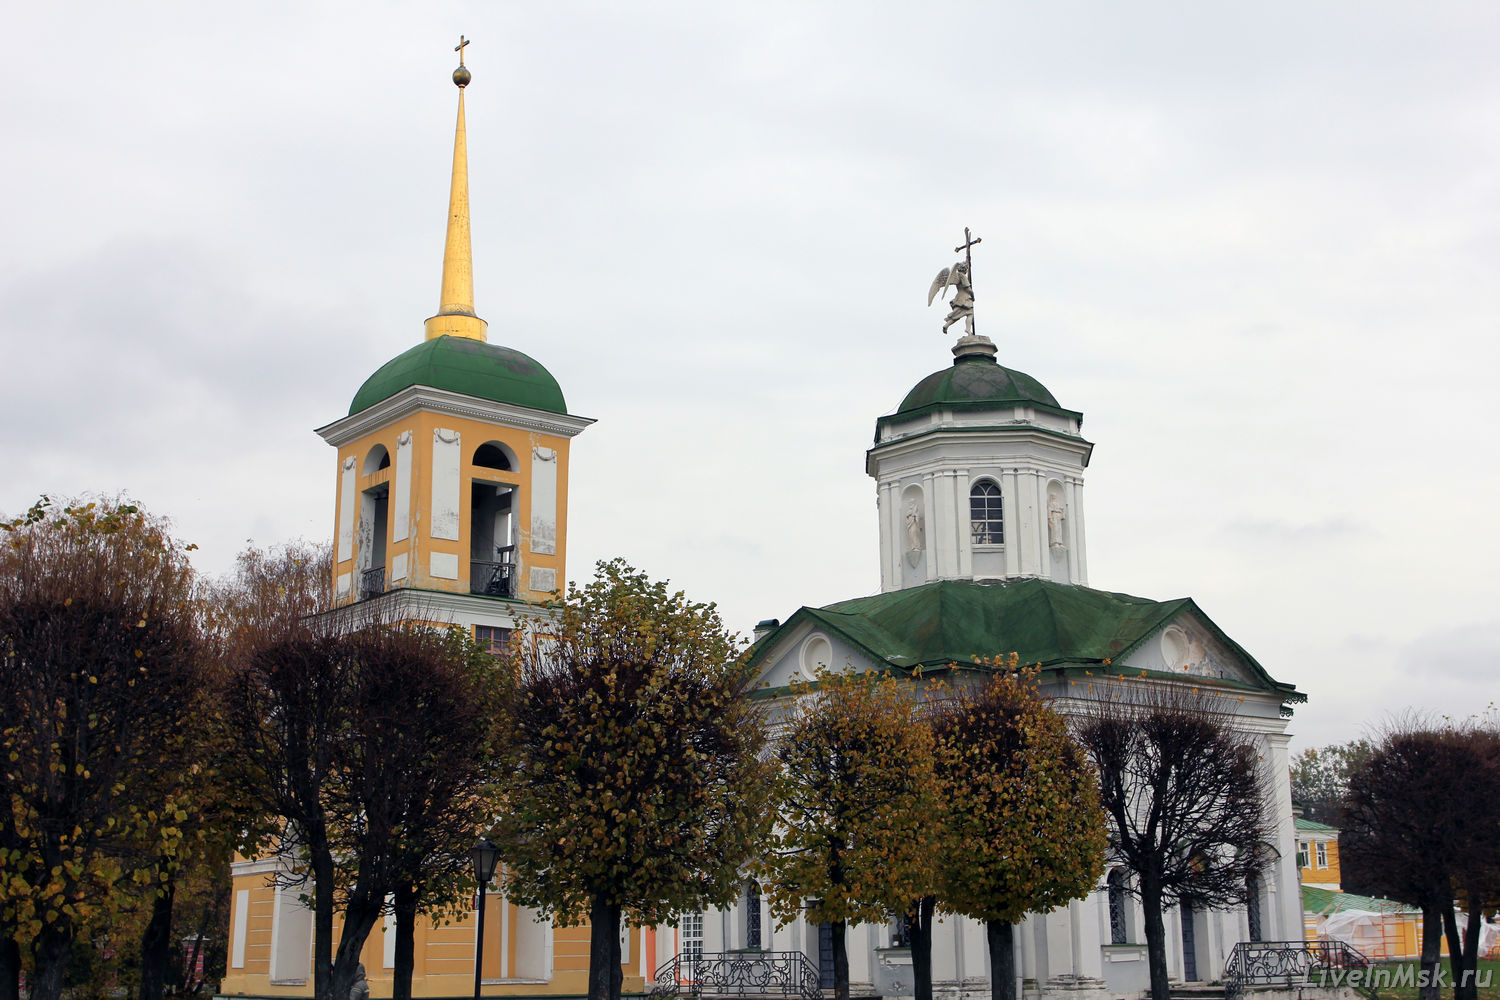 Церковь в Кусково, фото 2012 года